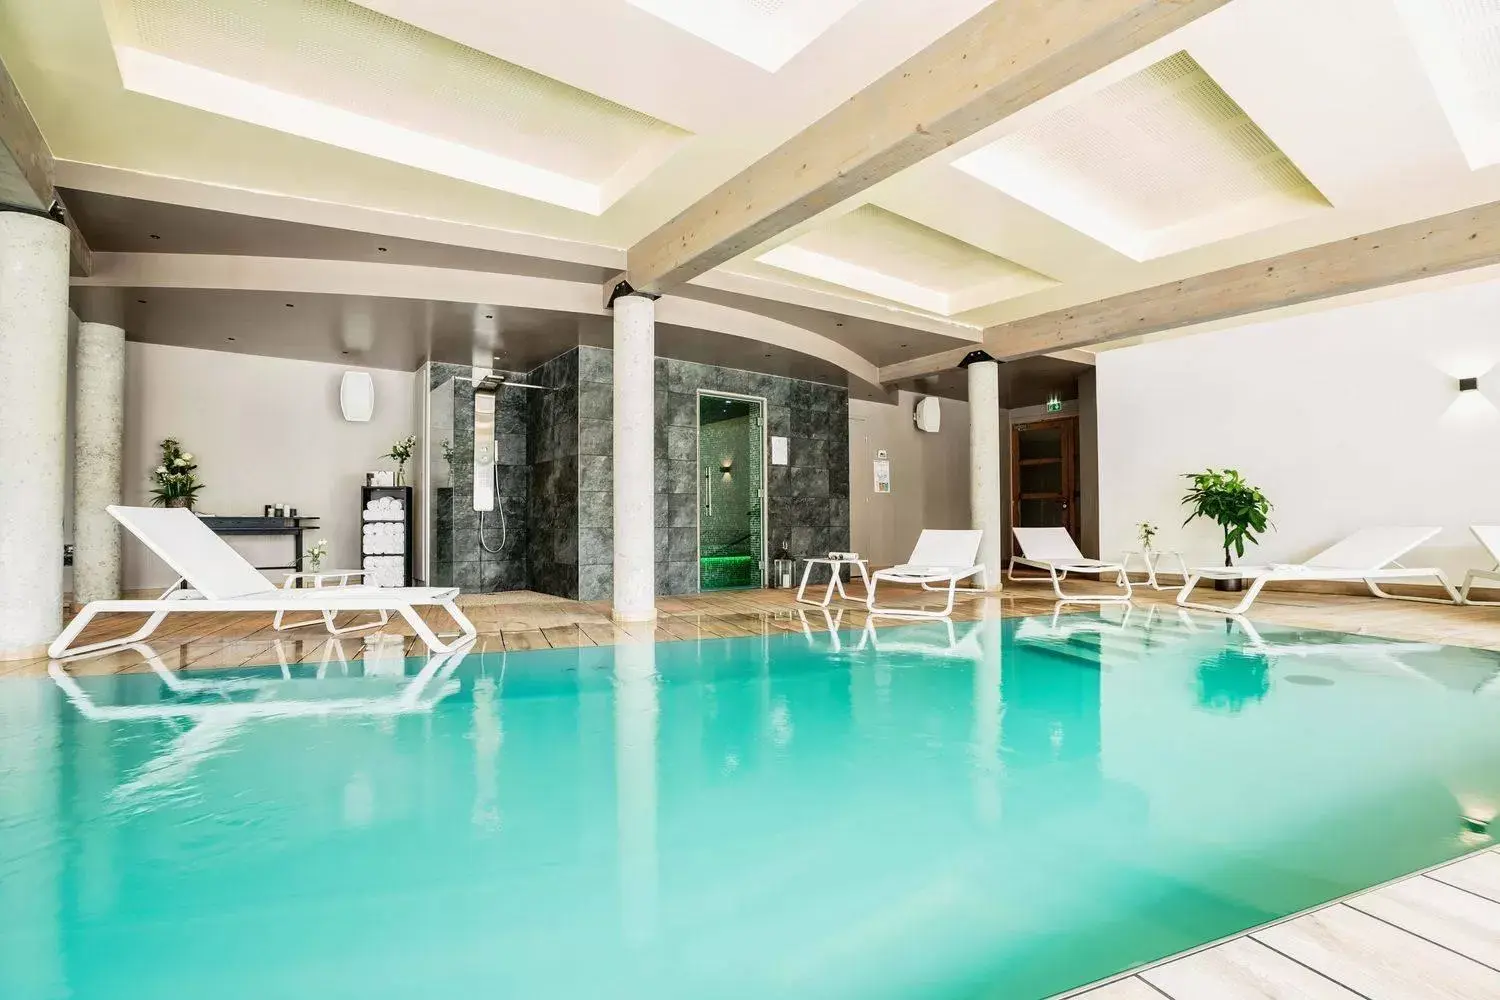 Swimming Pool in Best Western Premier Hotel de la Cite Royale